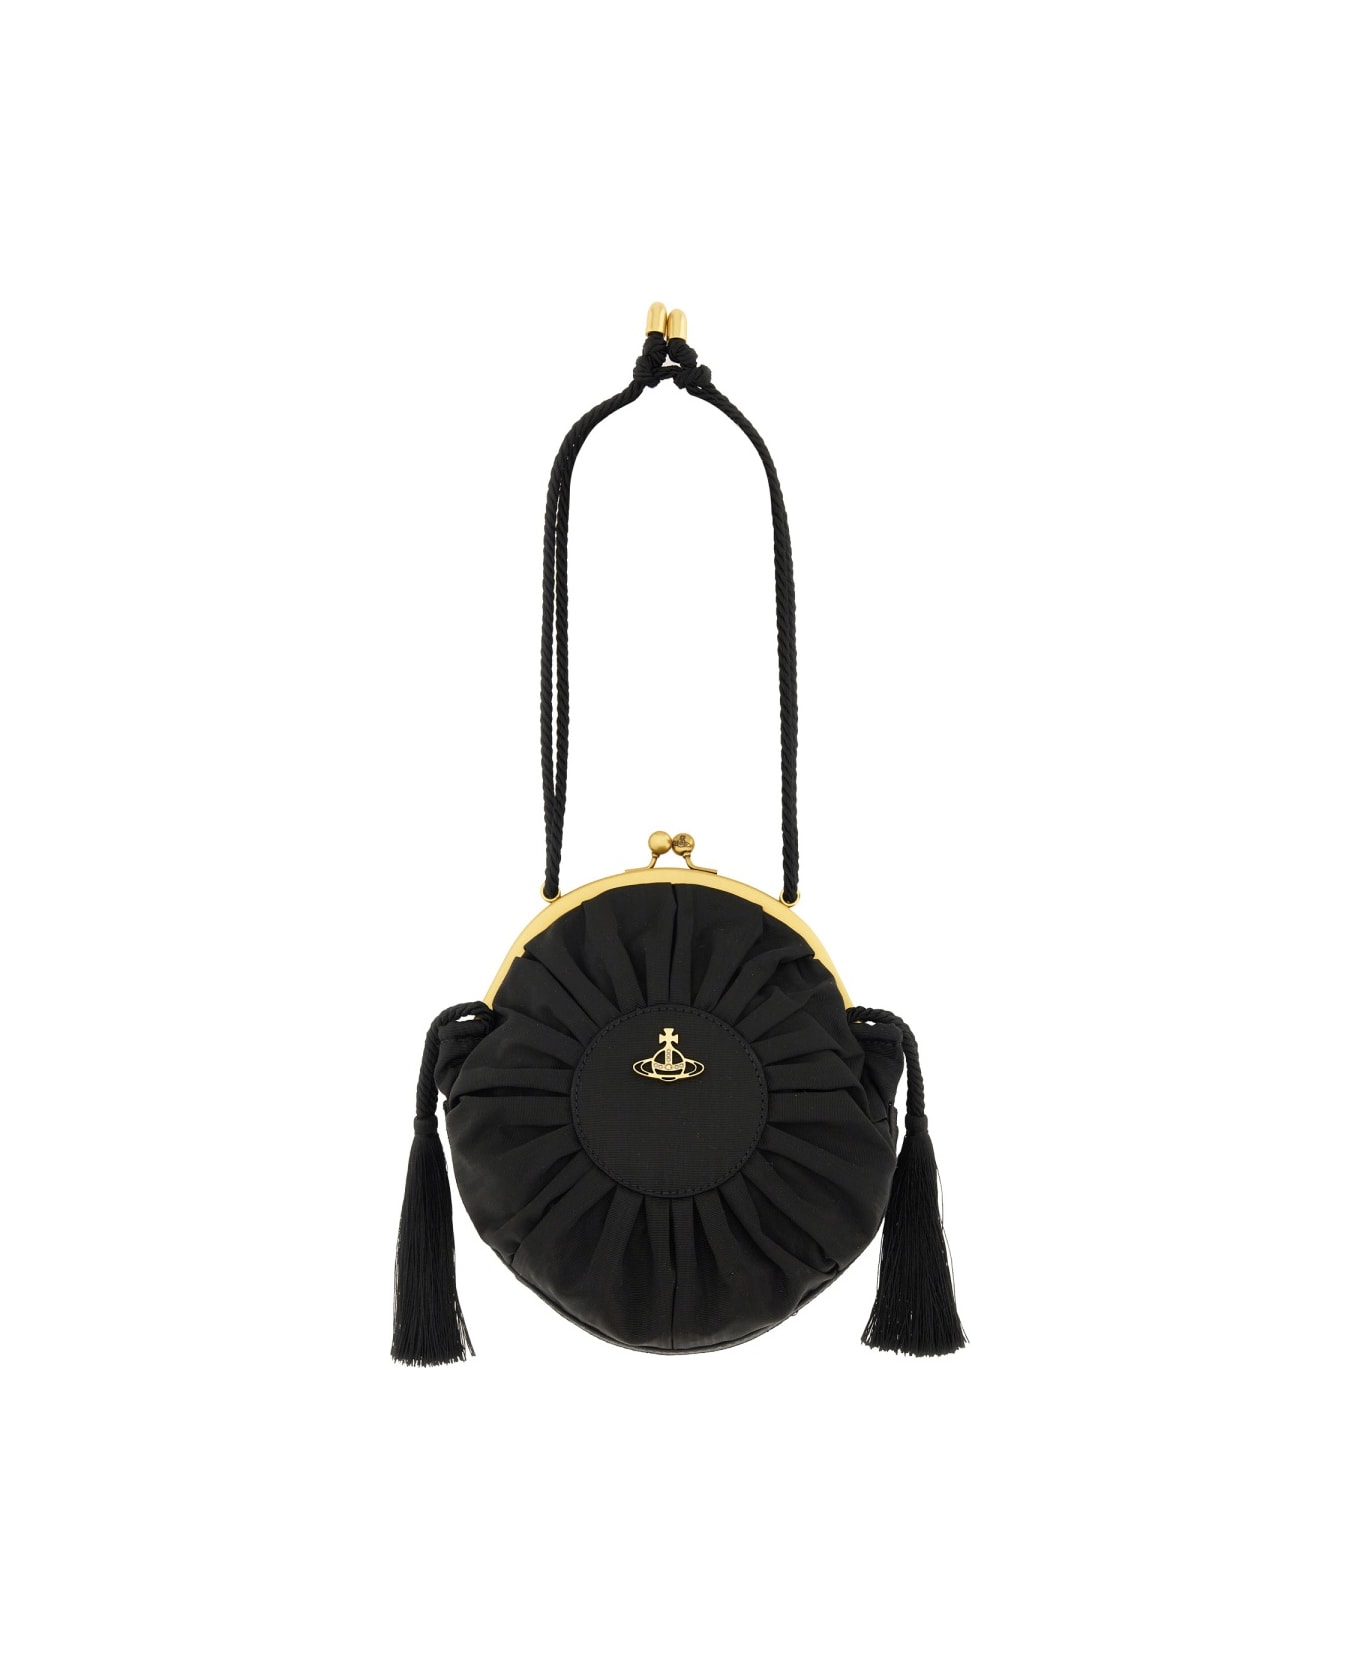 Vivienne Westwood Bag "rosie" - BLACK